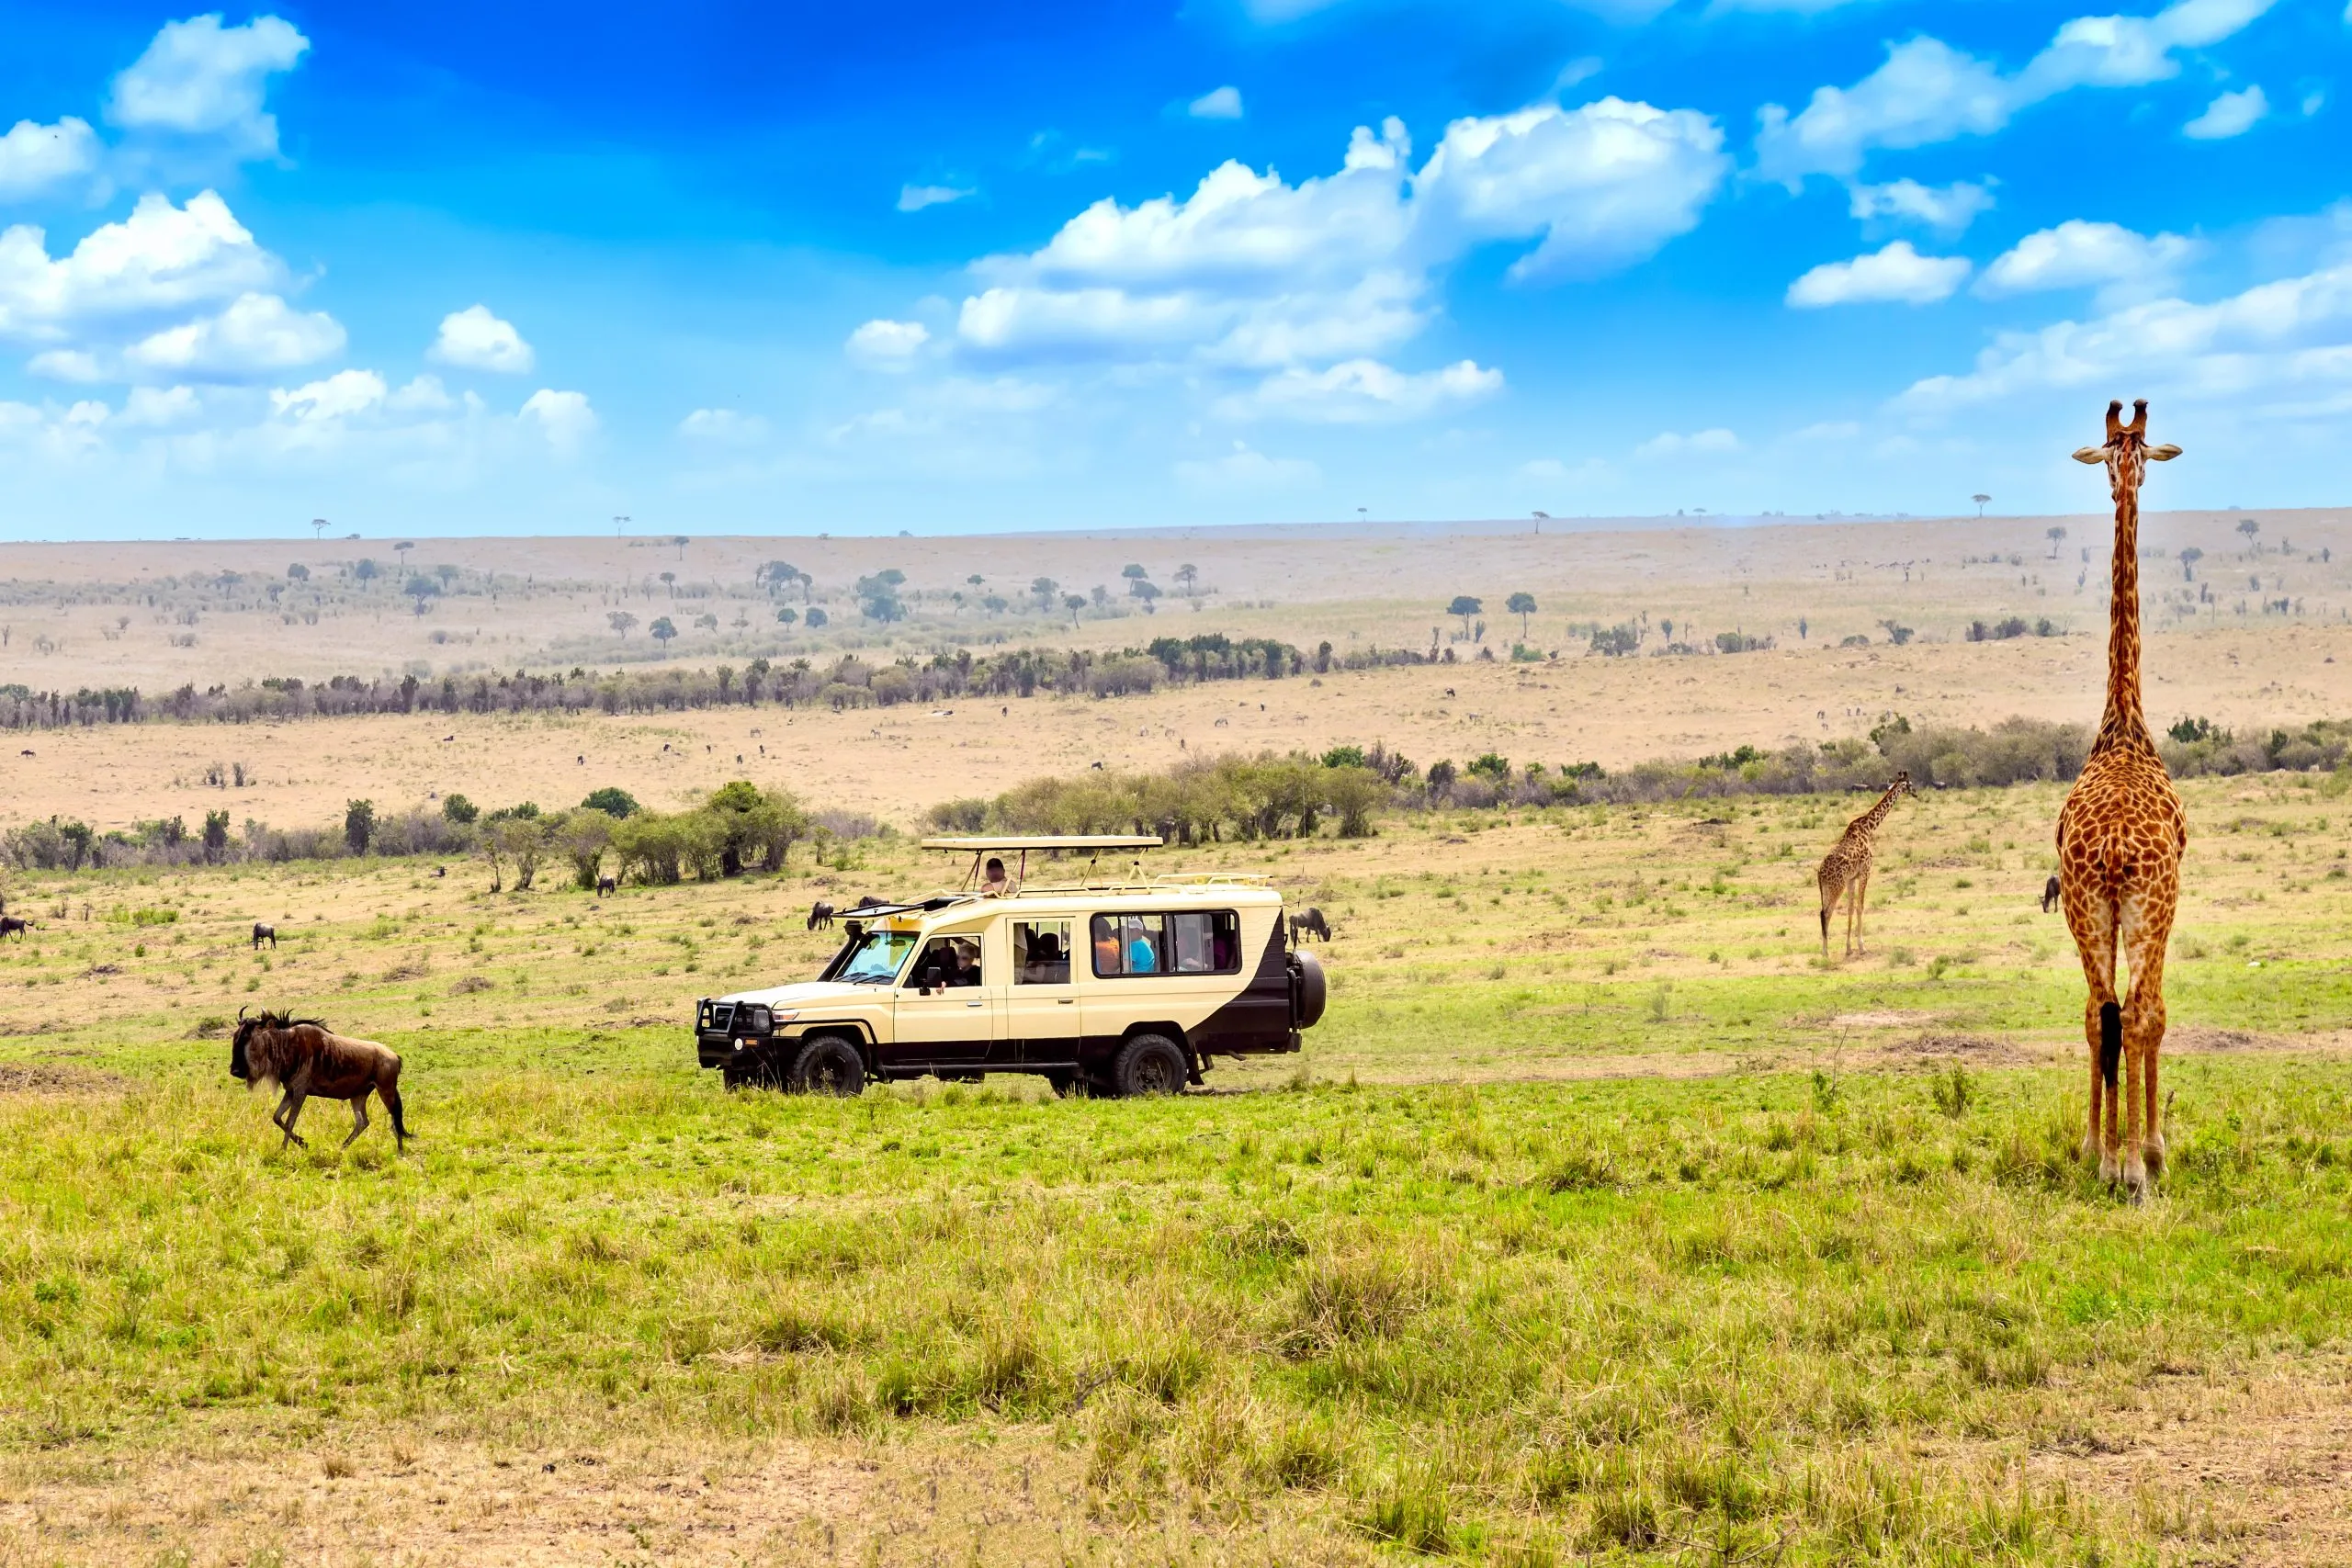 Vill sjiraff og gnu i nærheten av safaribil i Masai Mara nasjonalpark, Kenya. Safari-konsept. Afrikansk reiselandskap